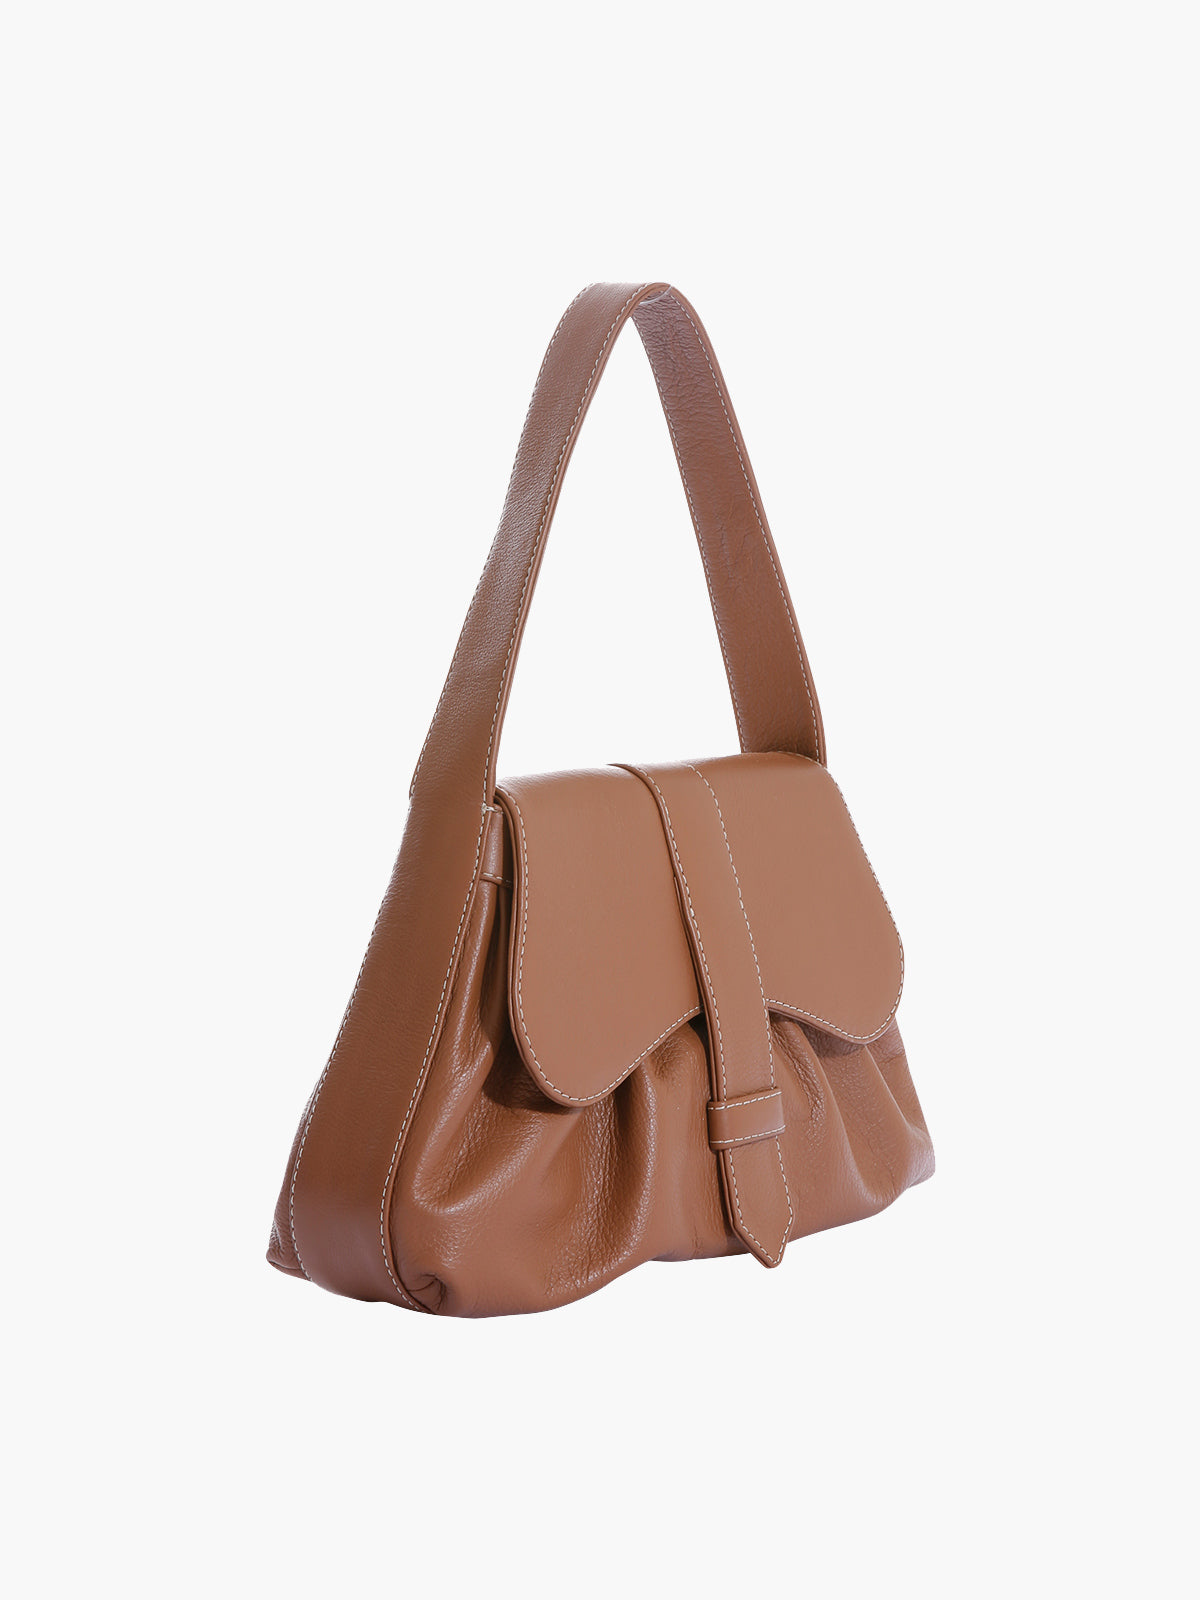 Delvaux Givry Suede Bag - Neutrals Handle Bags, Handbags